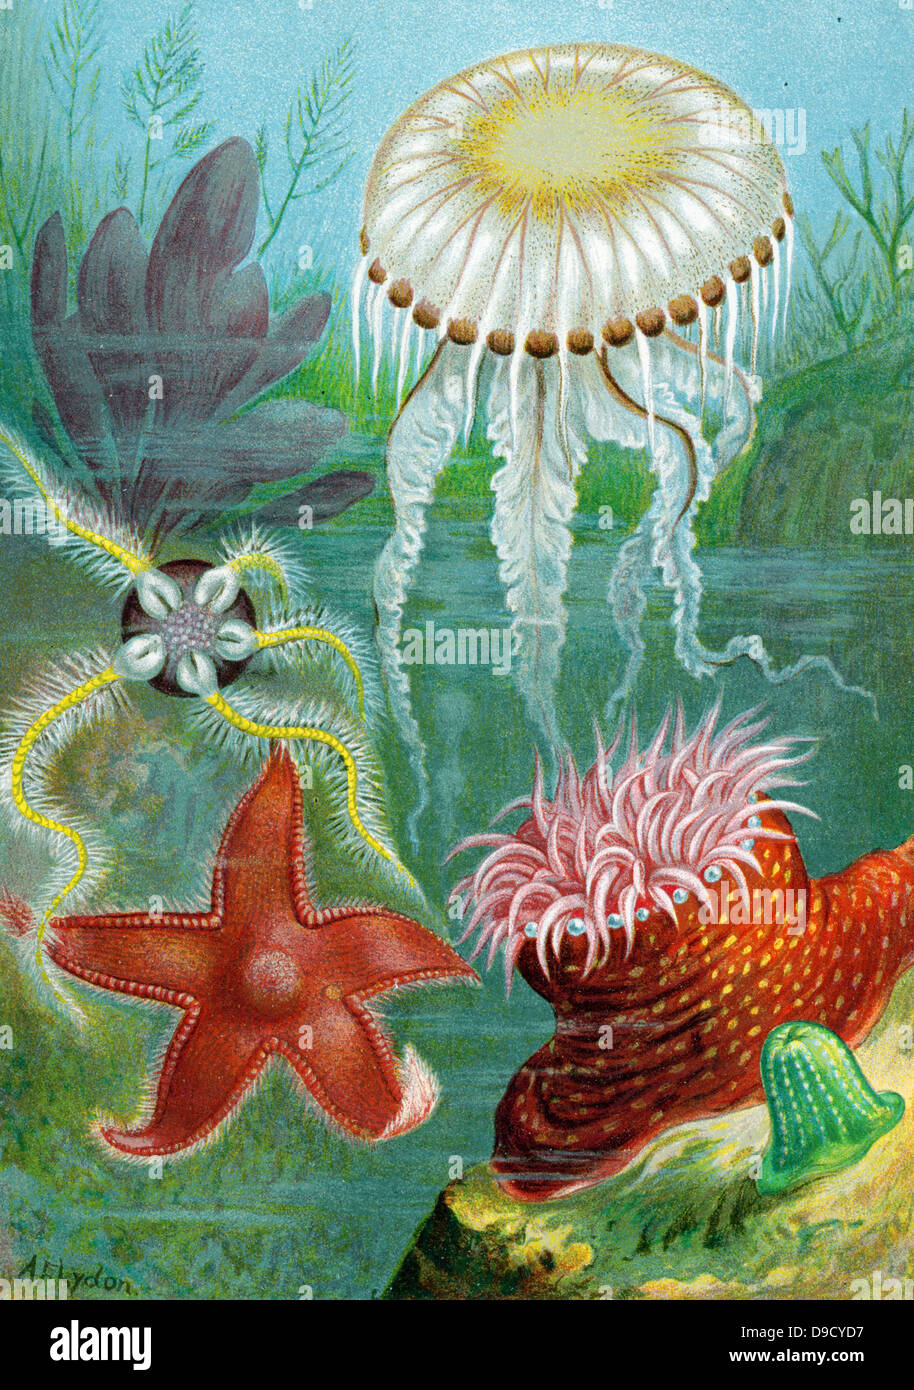 Juego de 21 adornos de estrellas de mar, decoración de estrella de mar, red  de peces de mar, estrella de mar, decoración de pared, decoración náutica